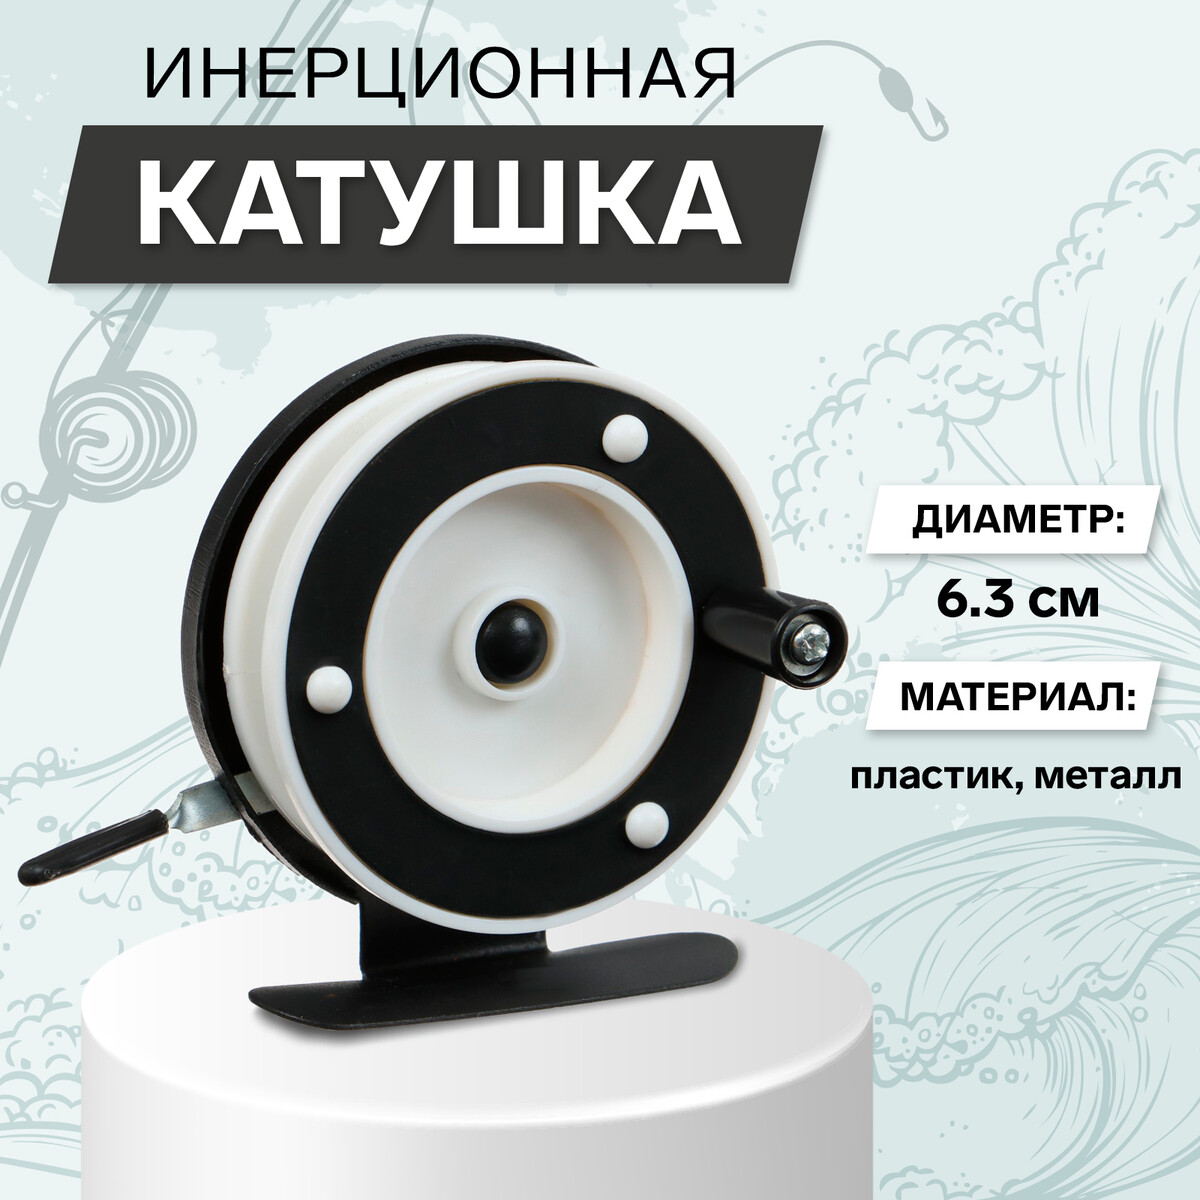 Катушка инерционная, металл пластик, диаметр 6.3 см, цвет черный белый, 701a